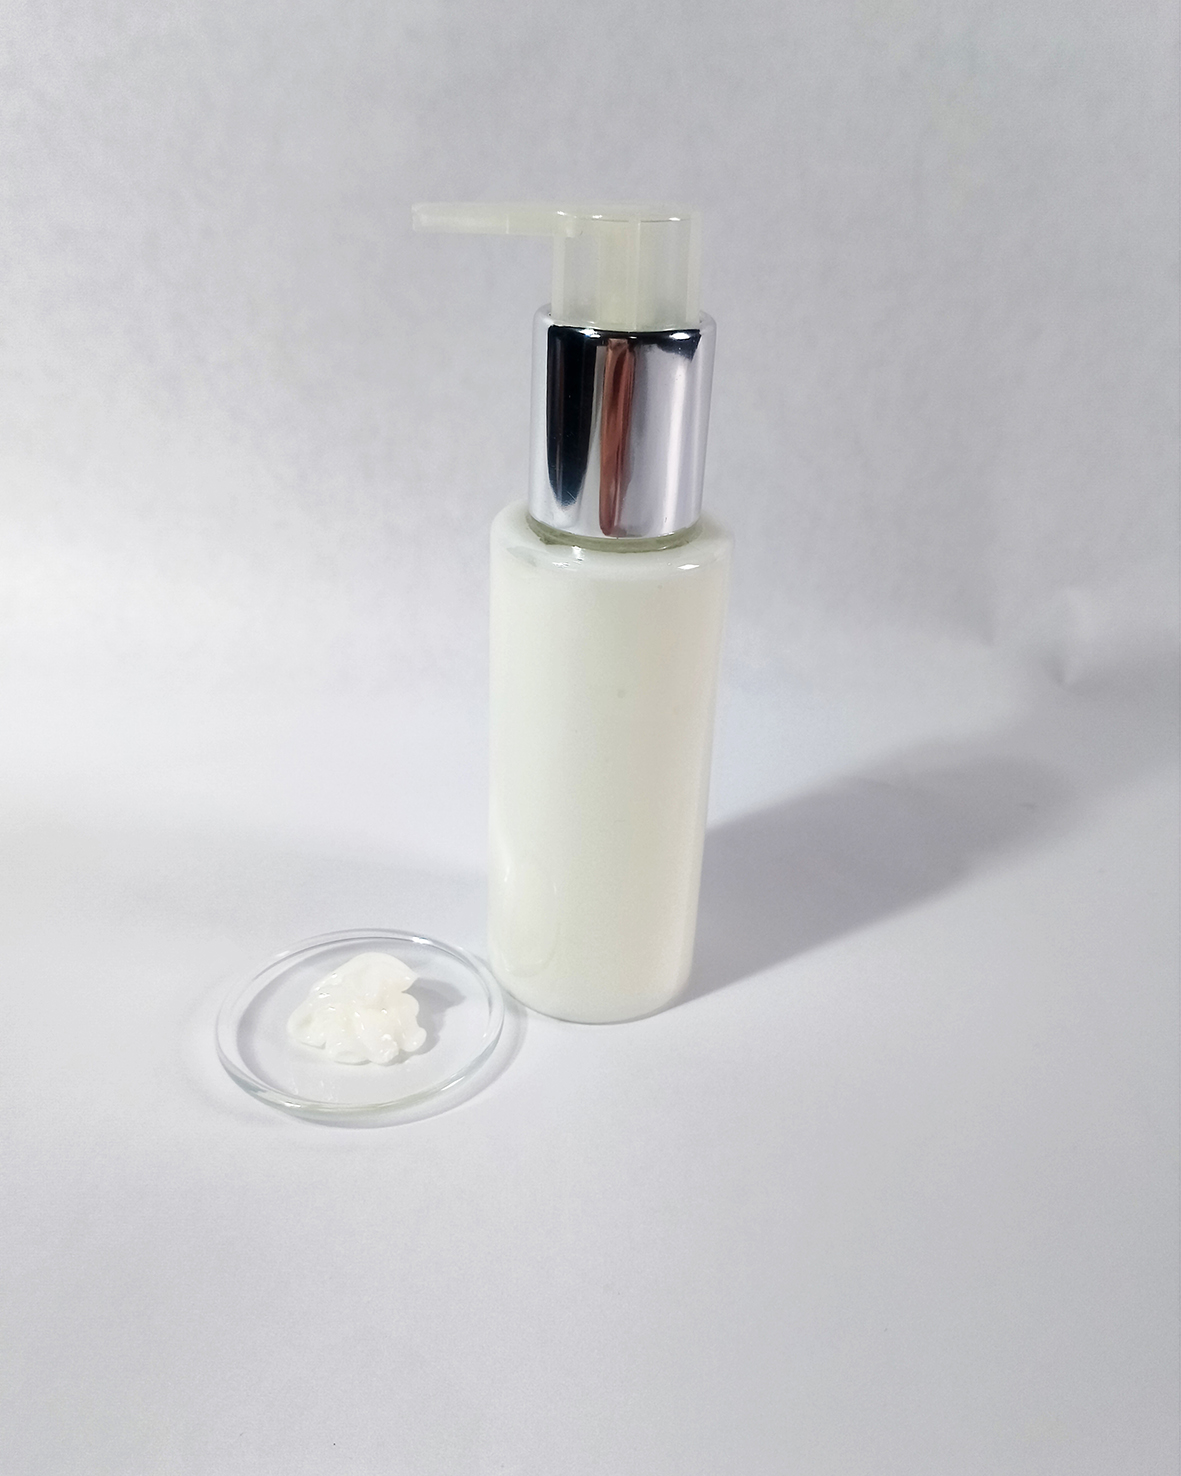 Sklenená fľaška s chmeľovým kondicionérom a tekutinou na priehľadom akrylovom podnose na bielom pozadí.